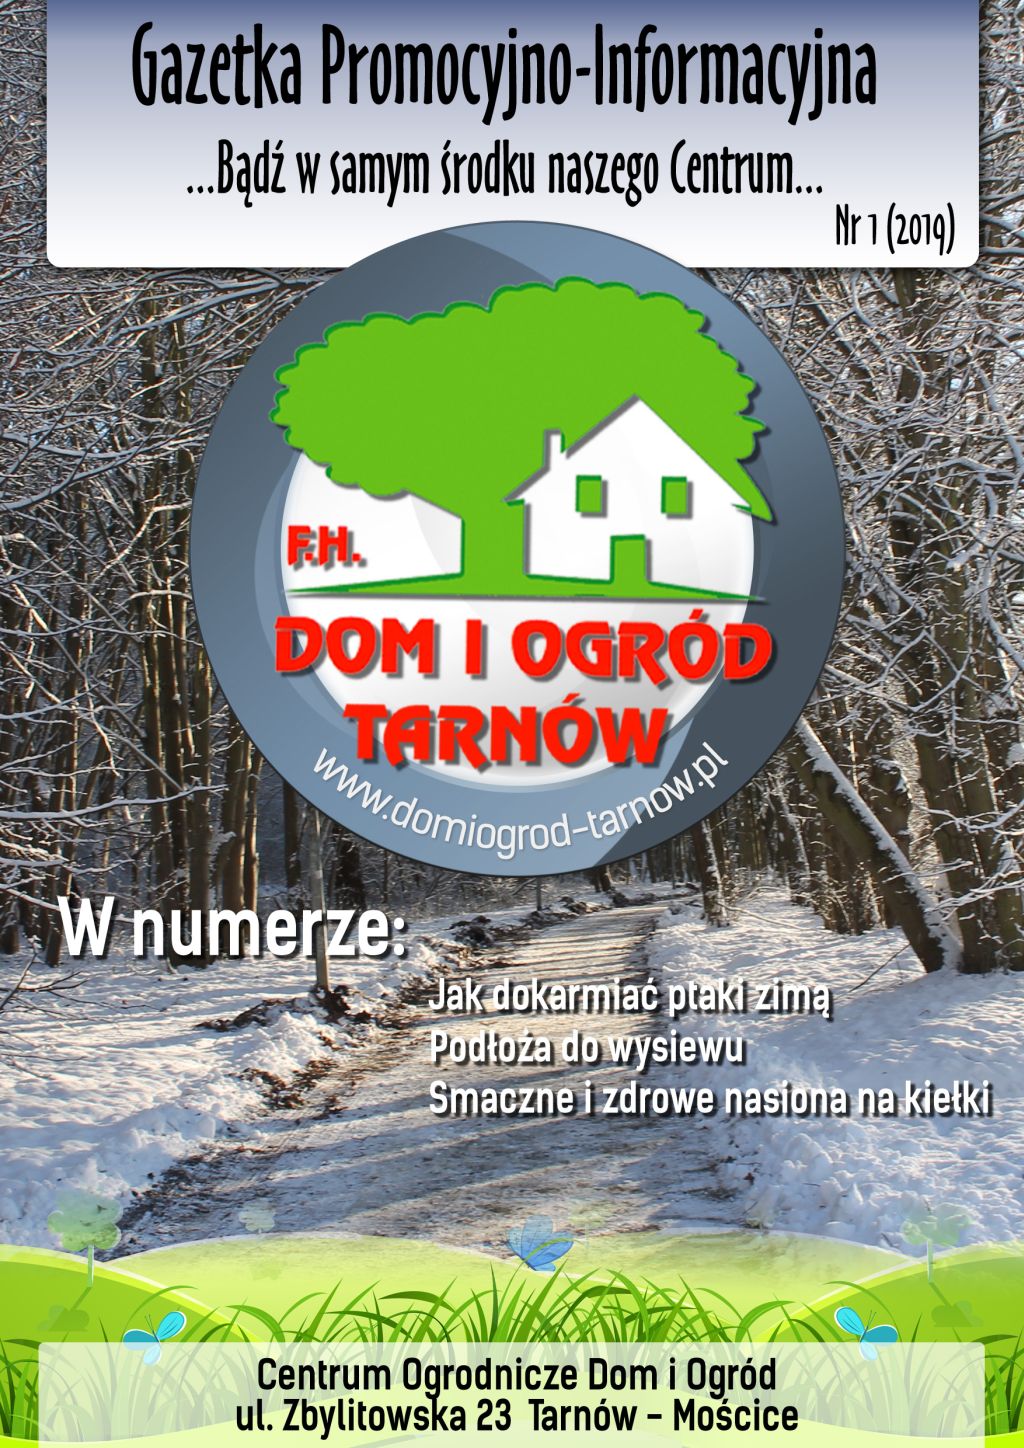 Gazetka Promocyjno-Informacyjna - 01/2019